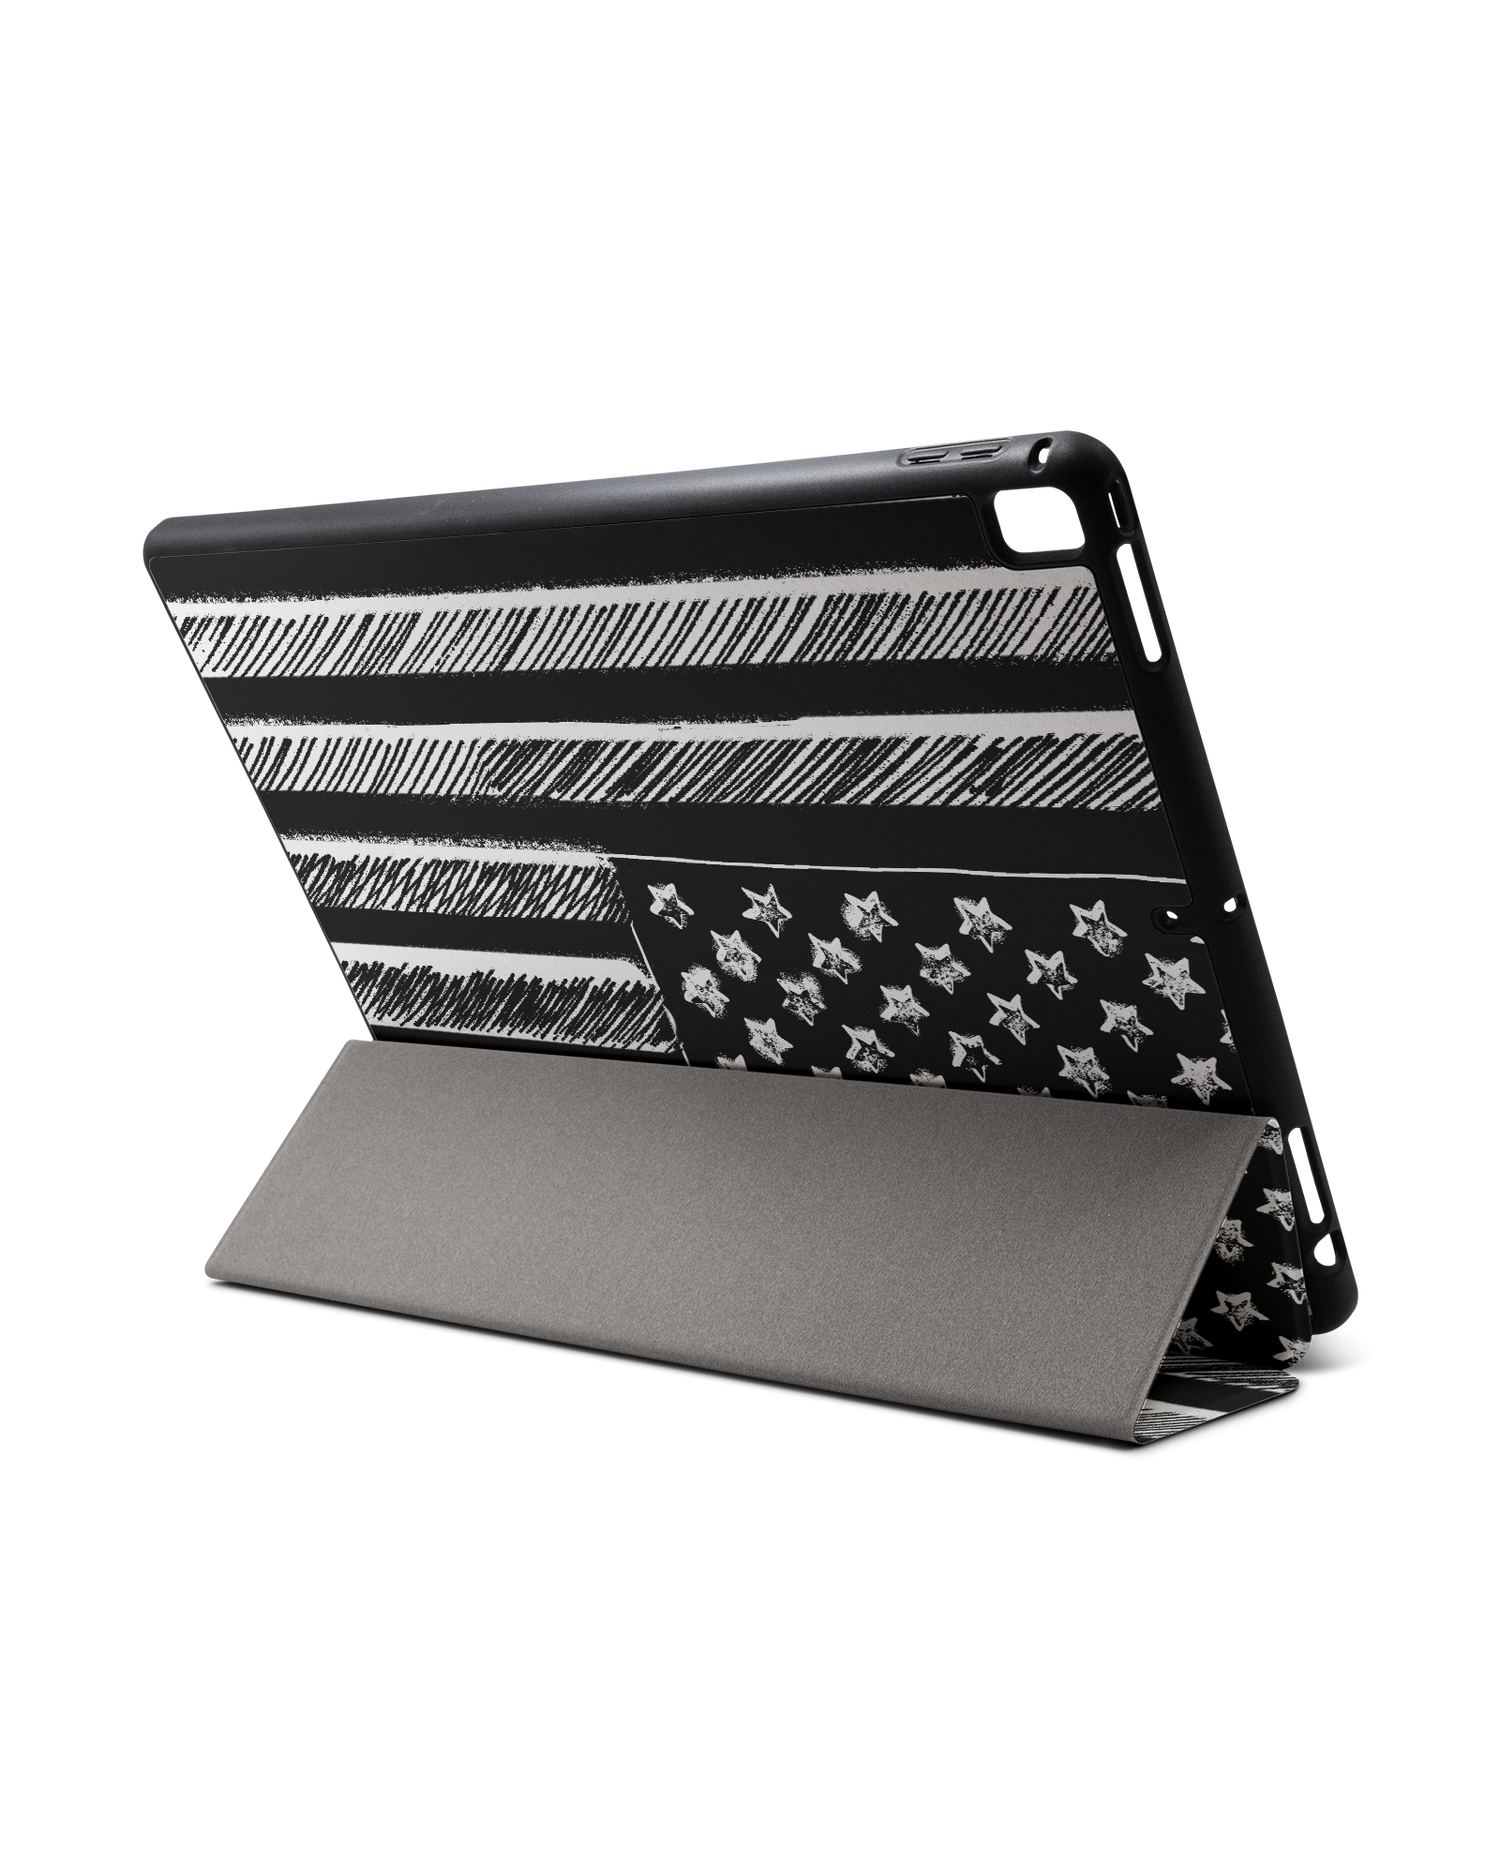 Black and White iPad Hülle mit Stifthalter für Apple iPad Pro 2 12.9'' (2017): Aufgestellt im Querformat von hinten